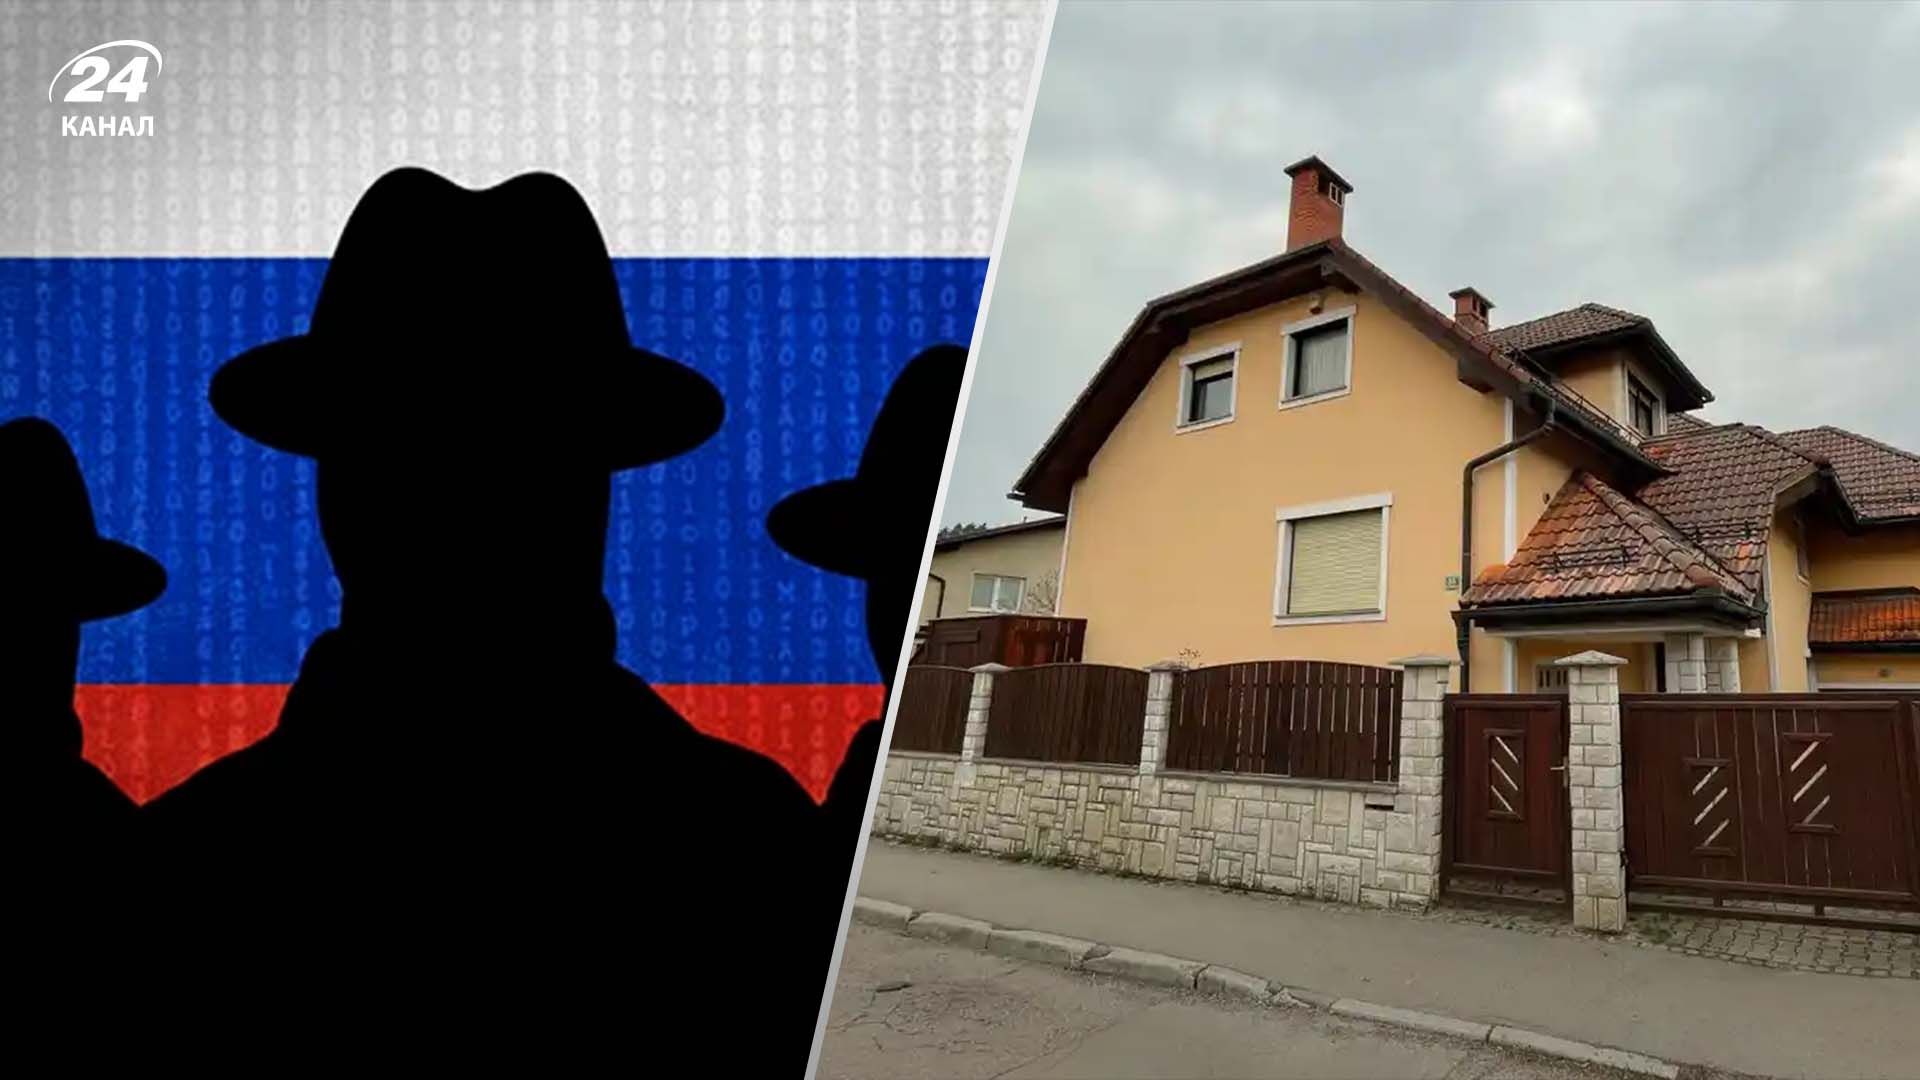 Наче звичайна сім'я, а насправді – російські шпигуни, – The Guardian про скандал у Словенії - 24 Канал